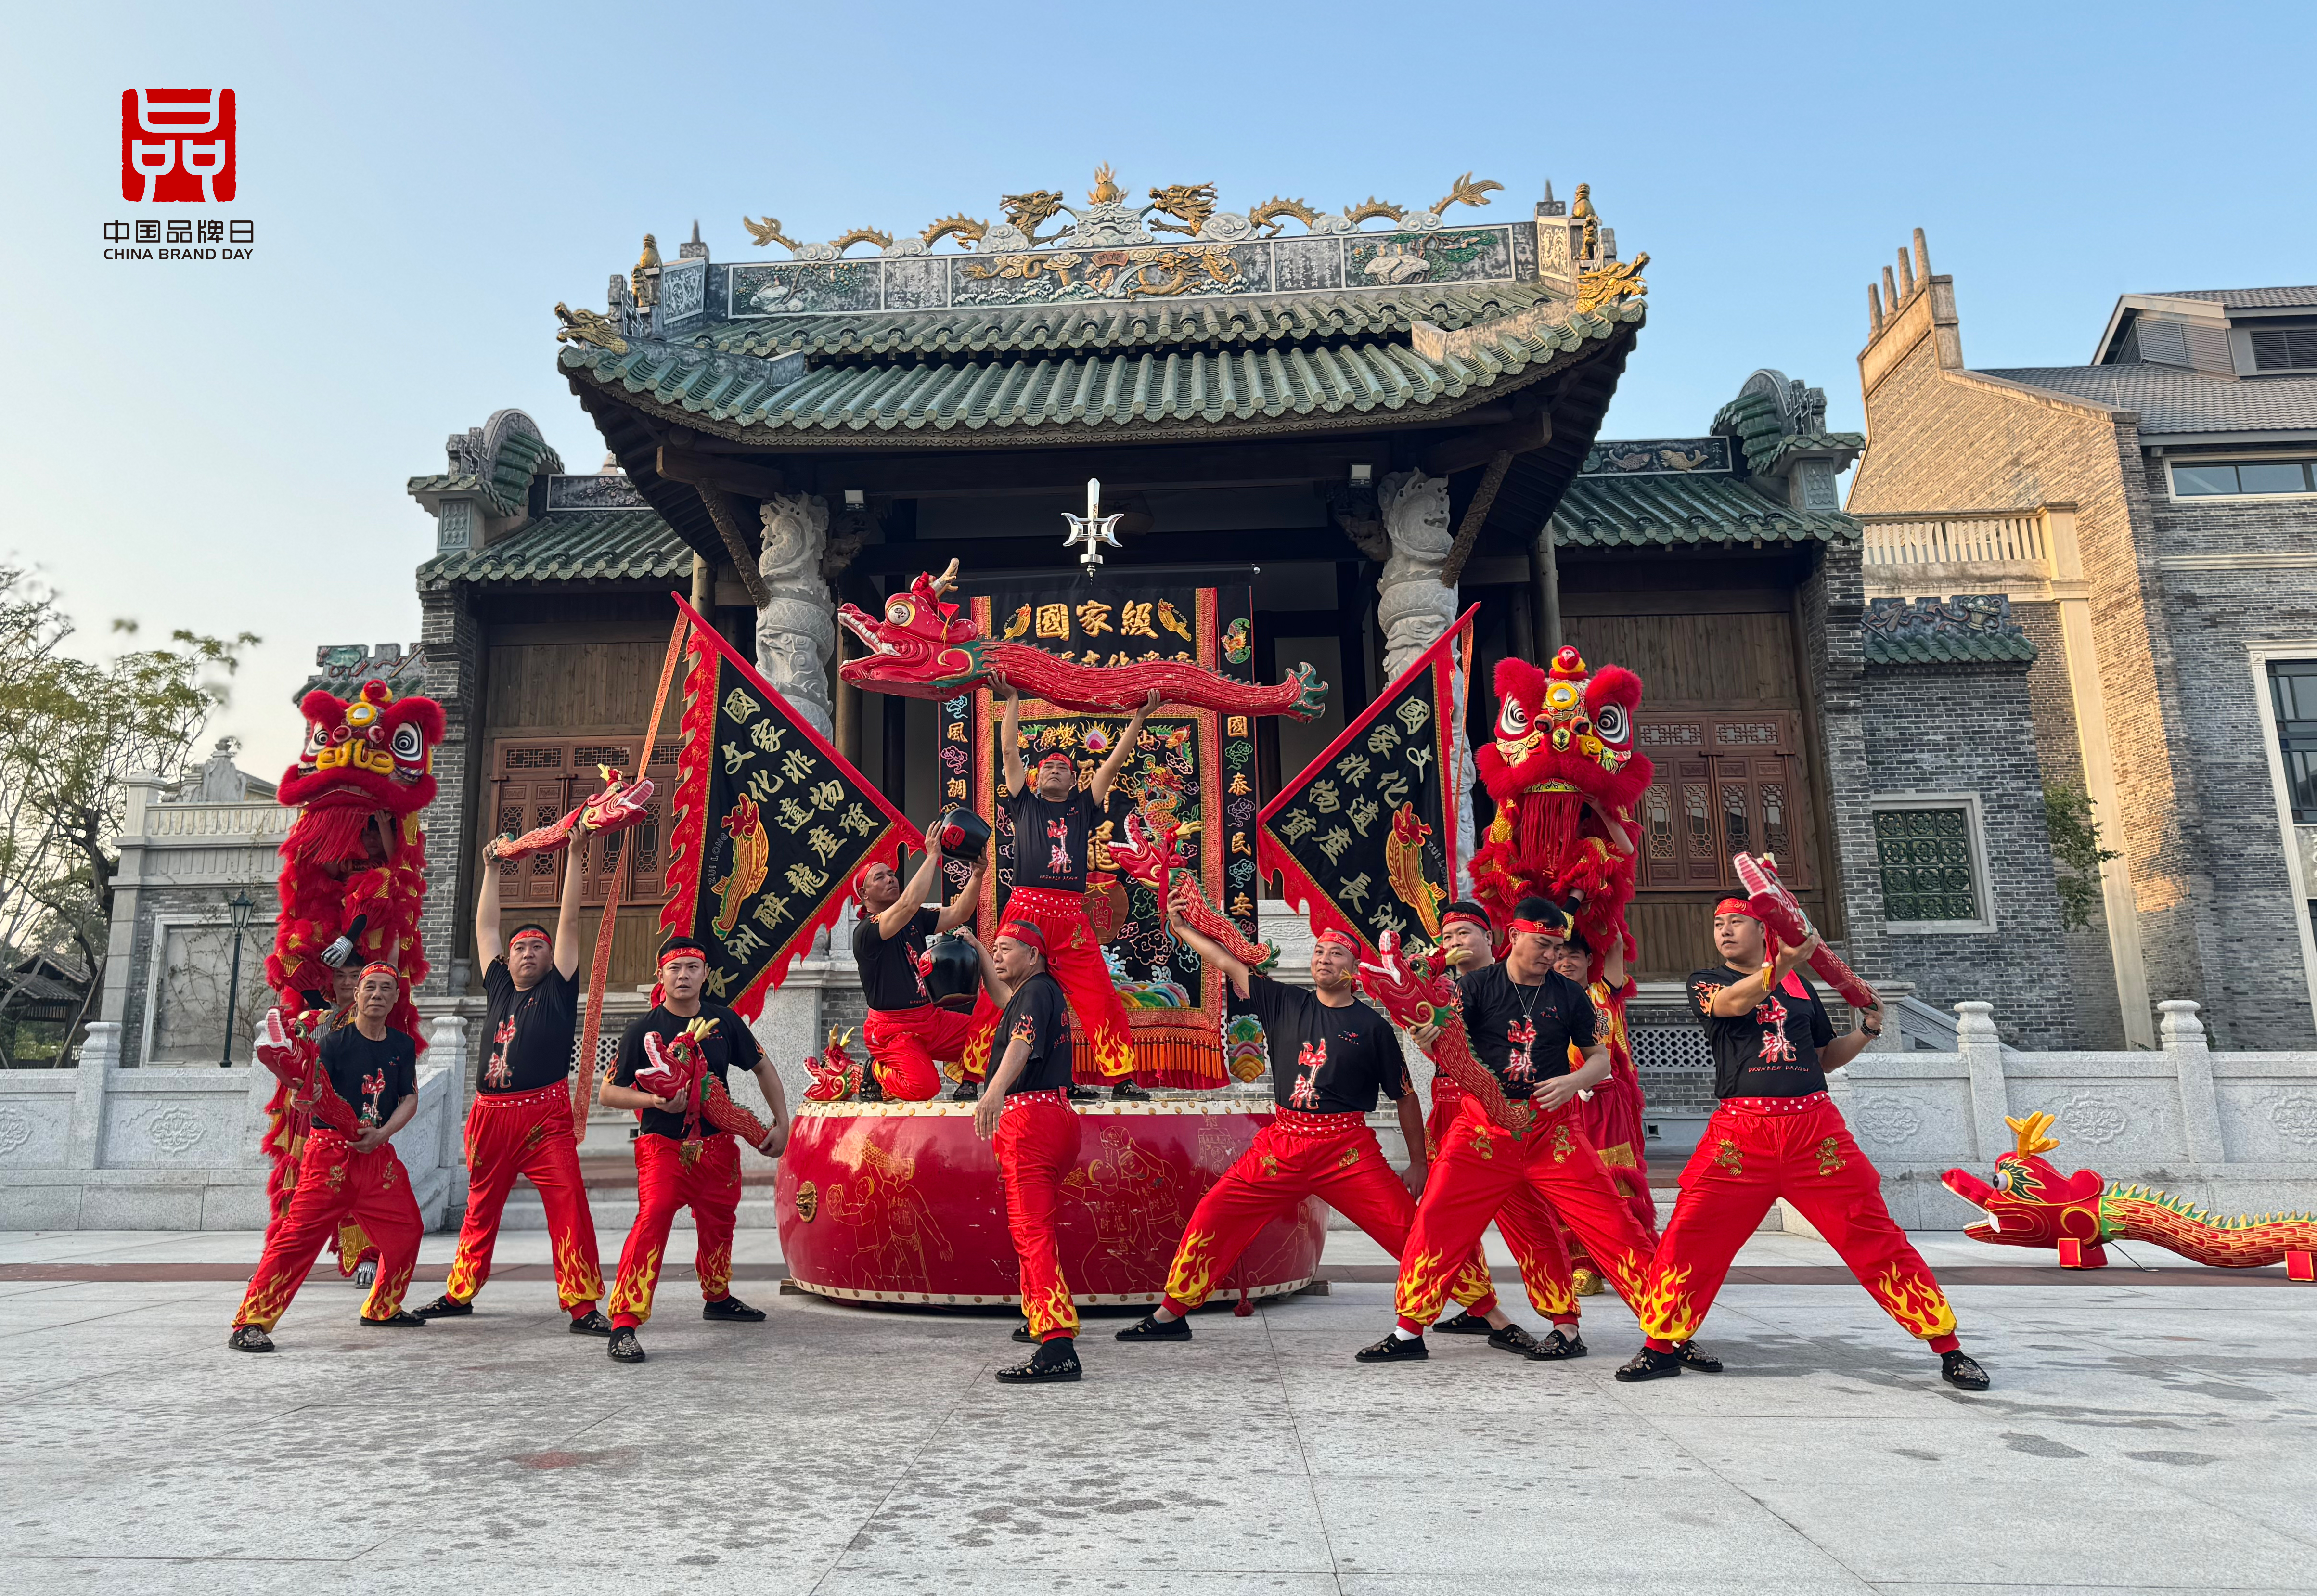 中山传统非遗文化醉龙表演将来到中山展馆。表演者供图